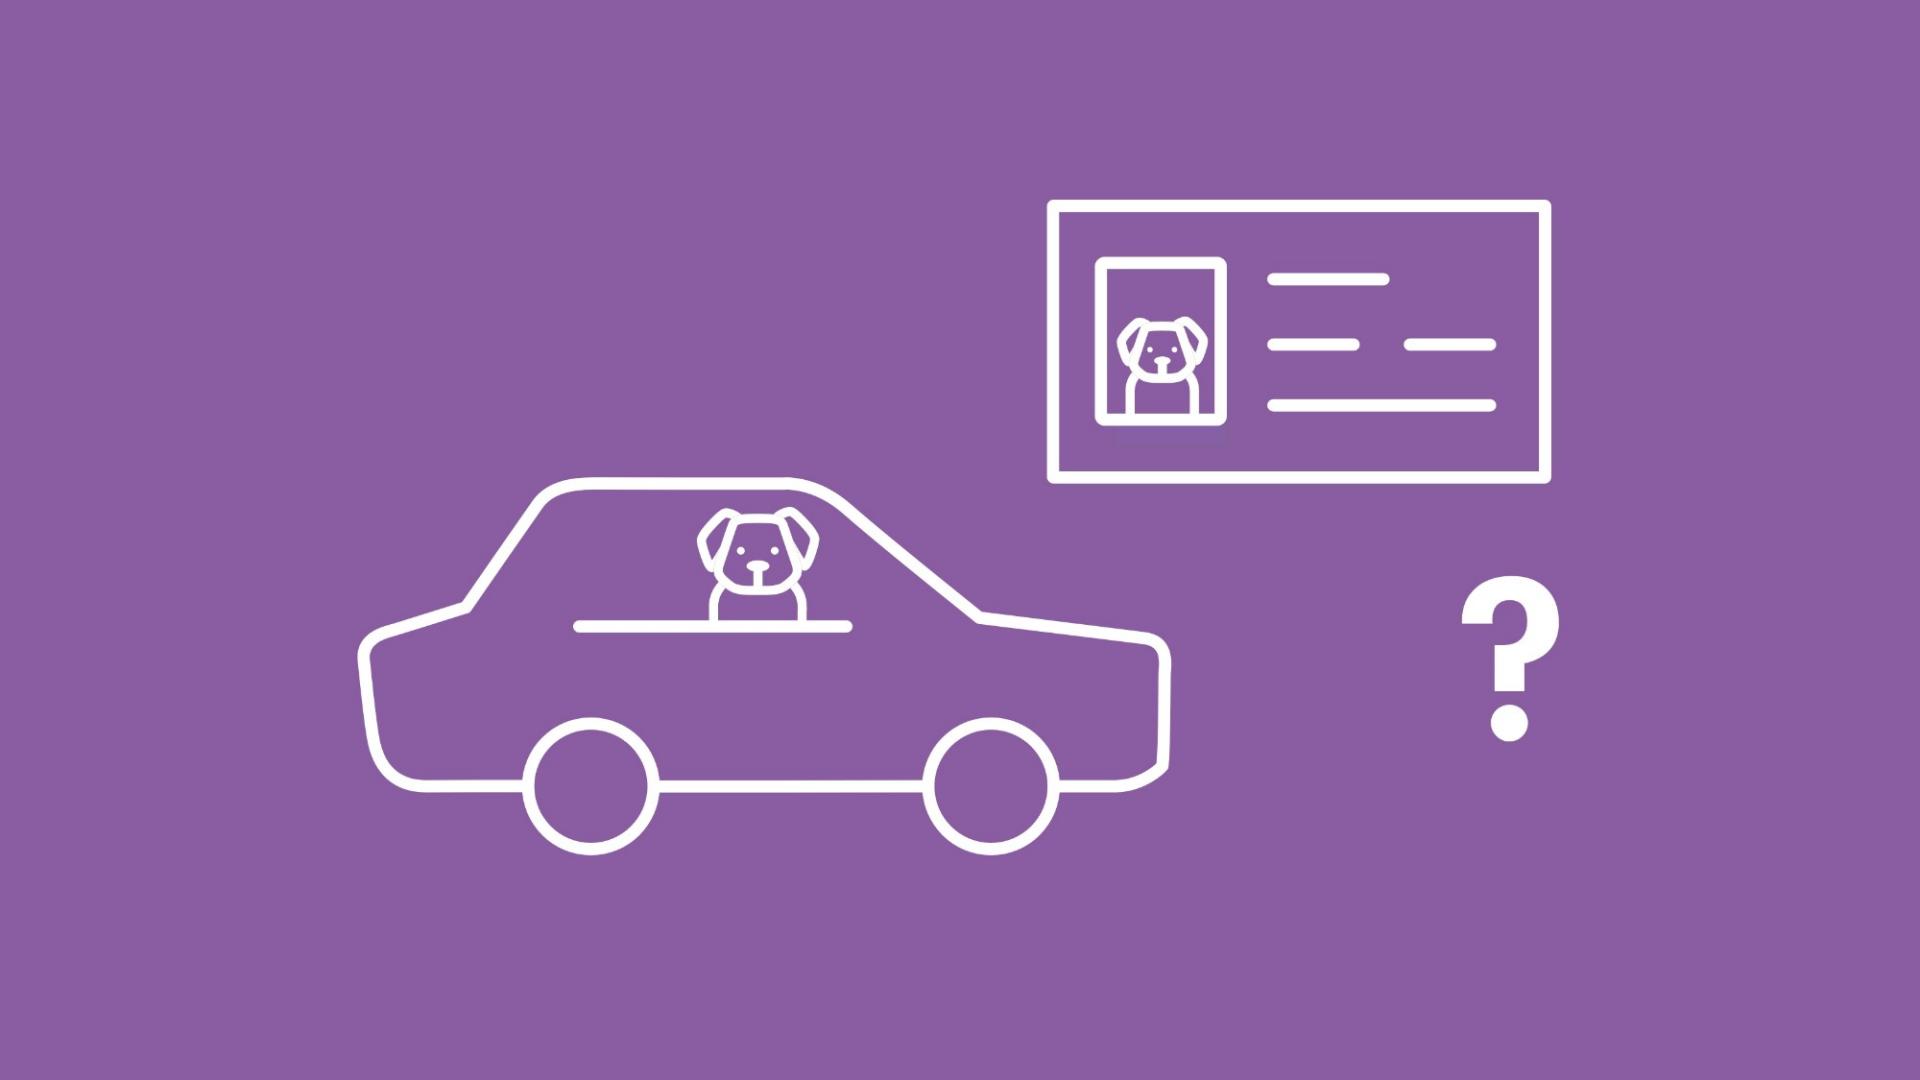 Die Grafik zeigt einen Hund in einem Auto. Daneben ist ein Führerschein mit dem Bild des Hundes und ein Fragezeichen zu sehen. 